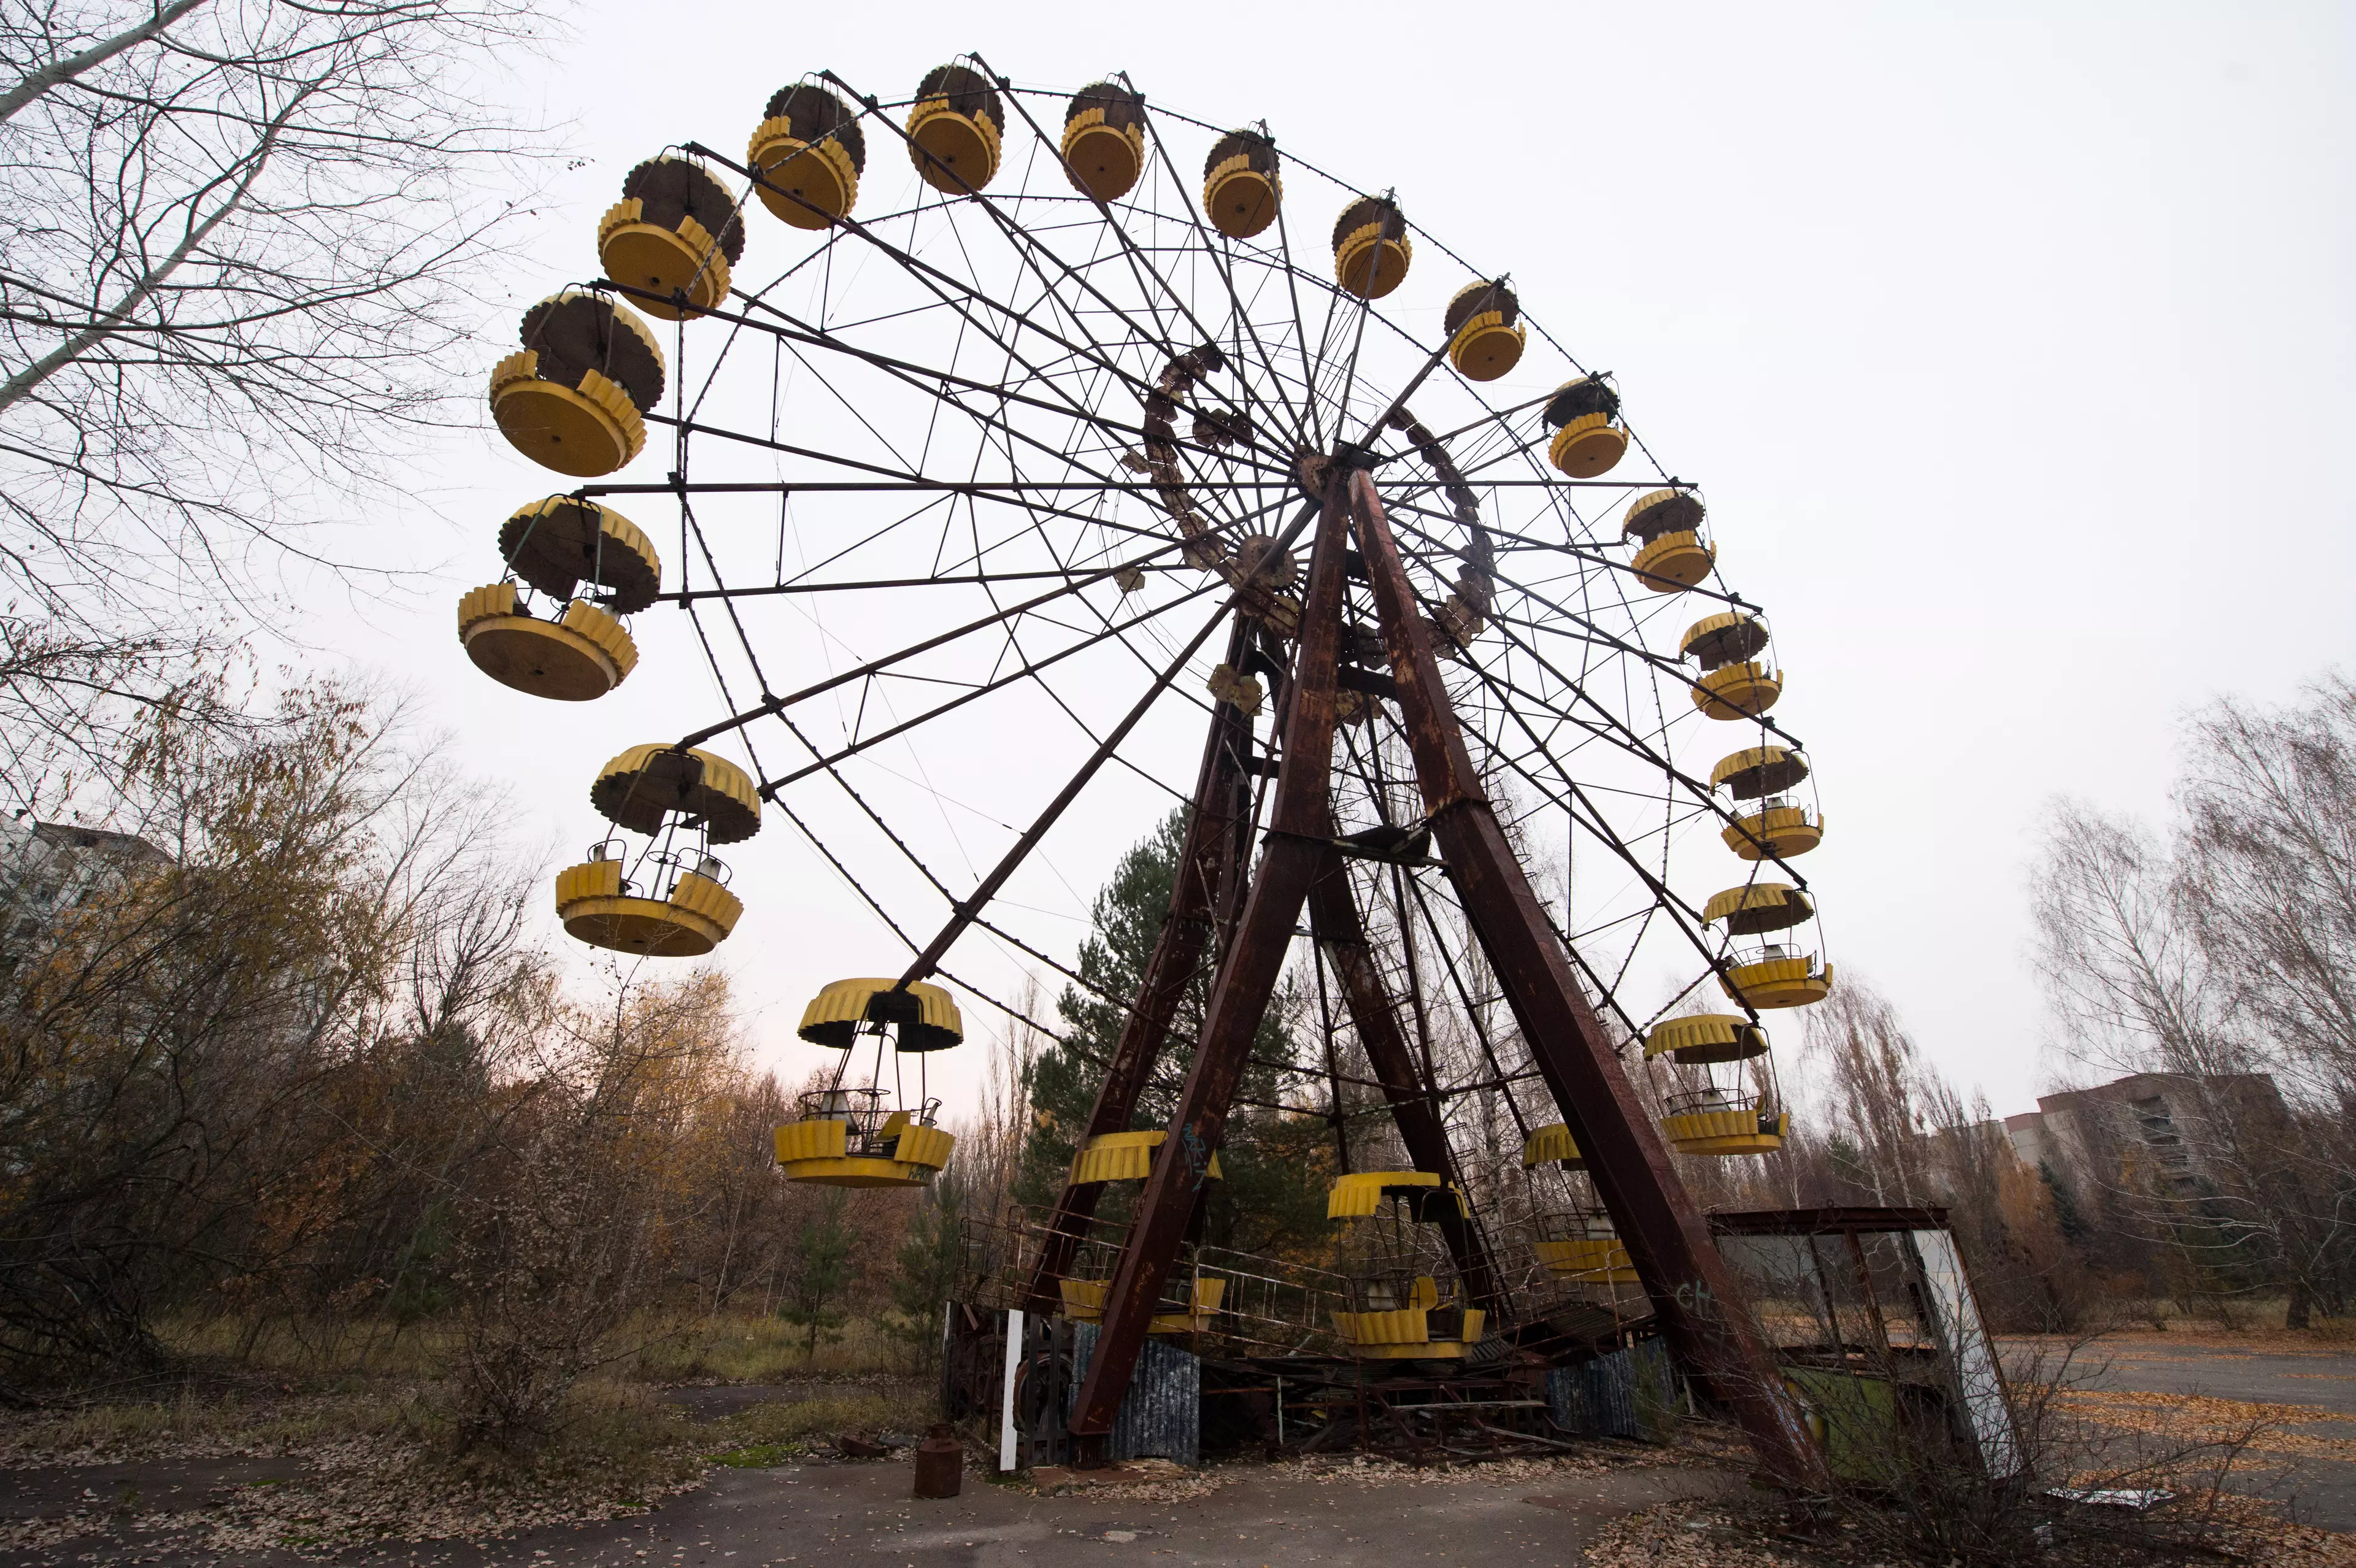 A derelict Ferris wheel in Pripyat.